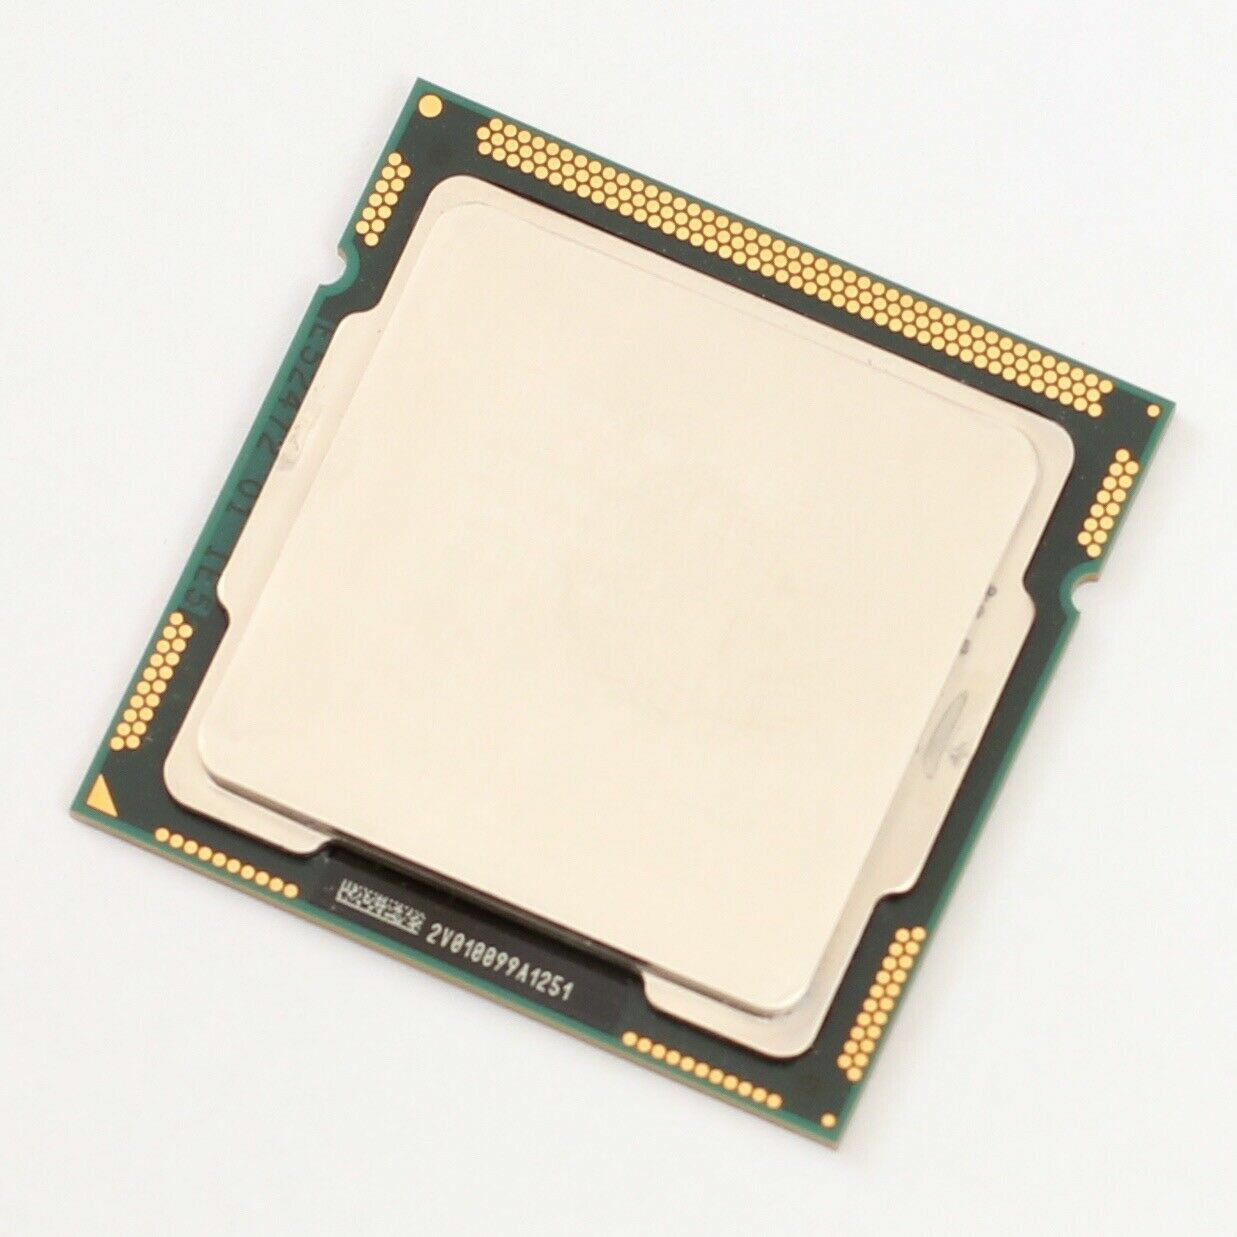 Intel Core i3-540 - 3.06 GHz (Socket 1156) Processor SLBTD CPU